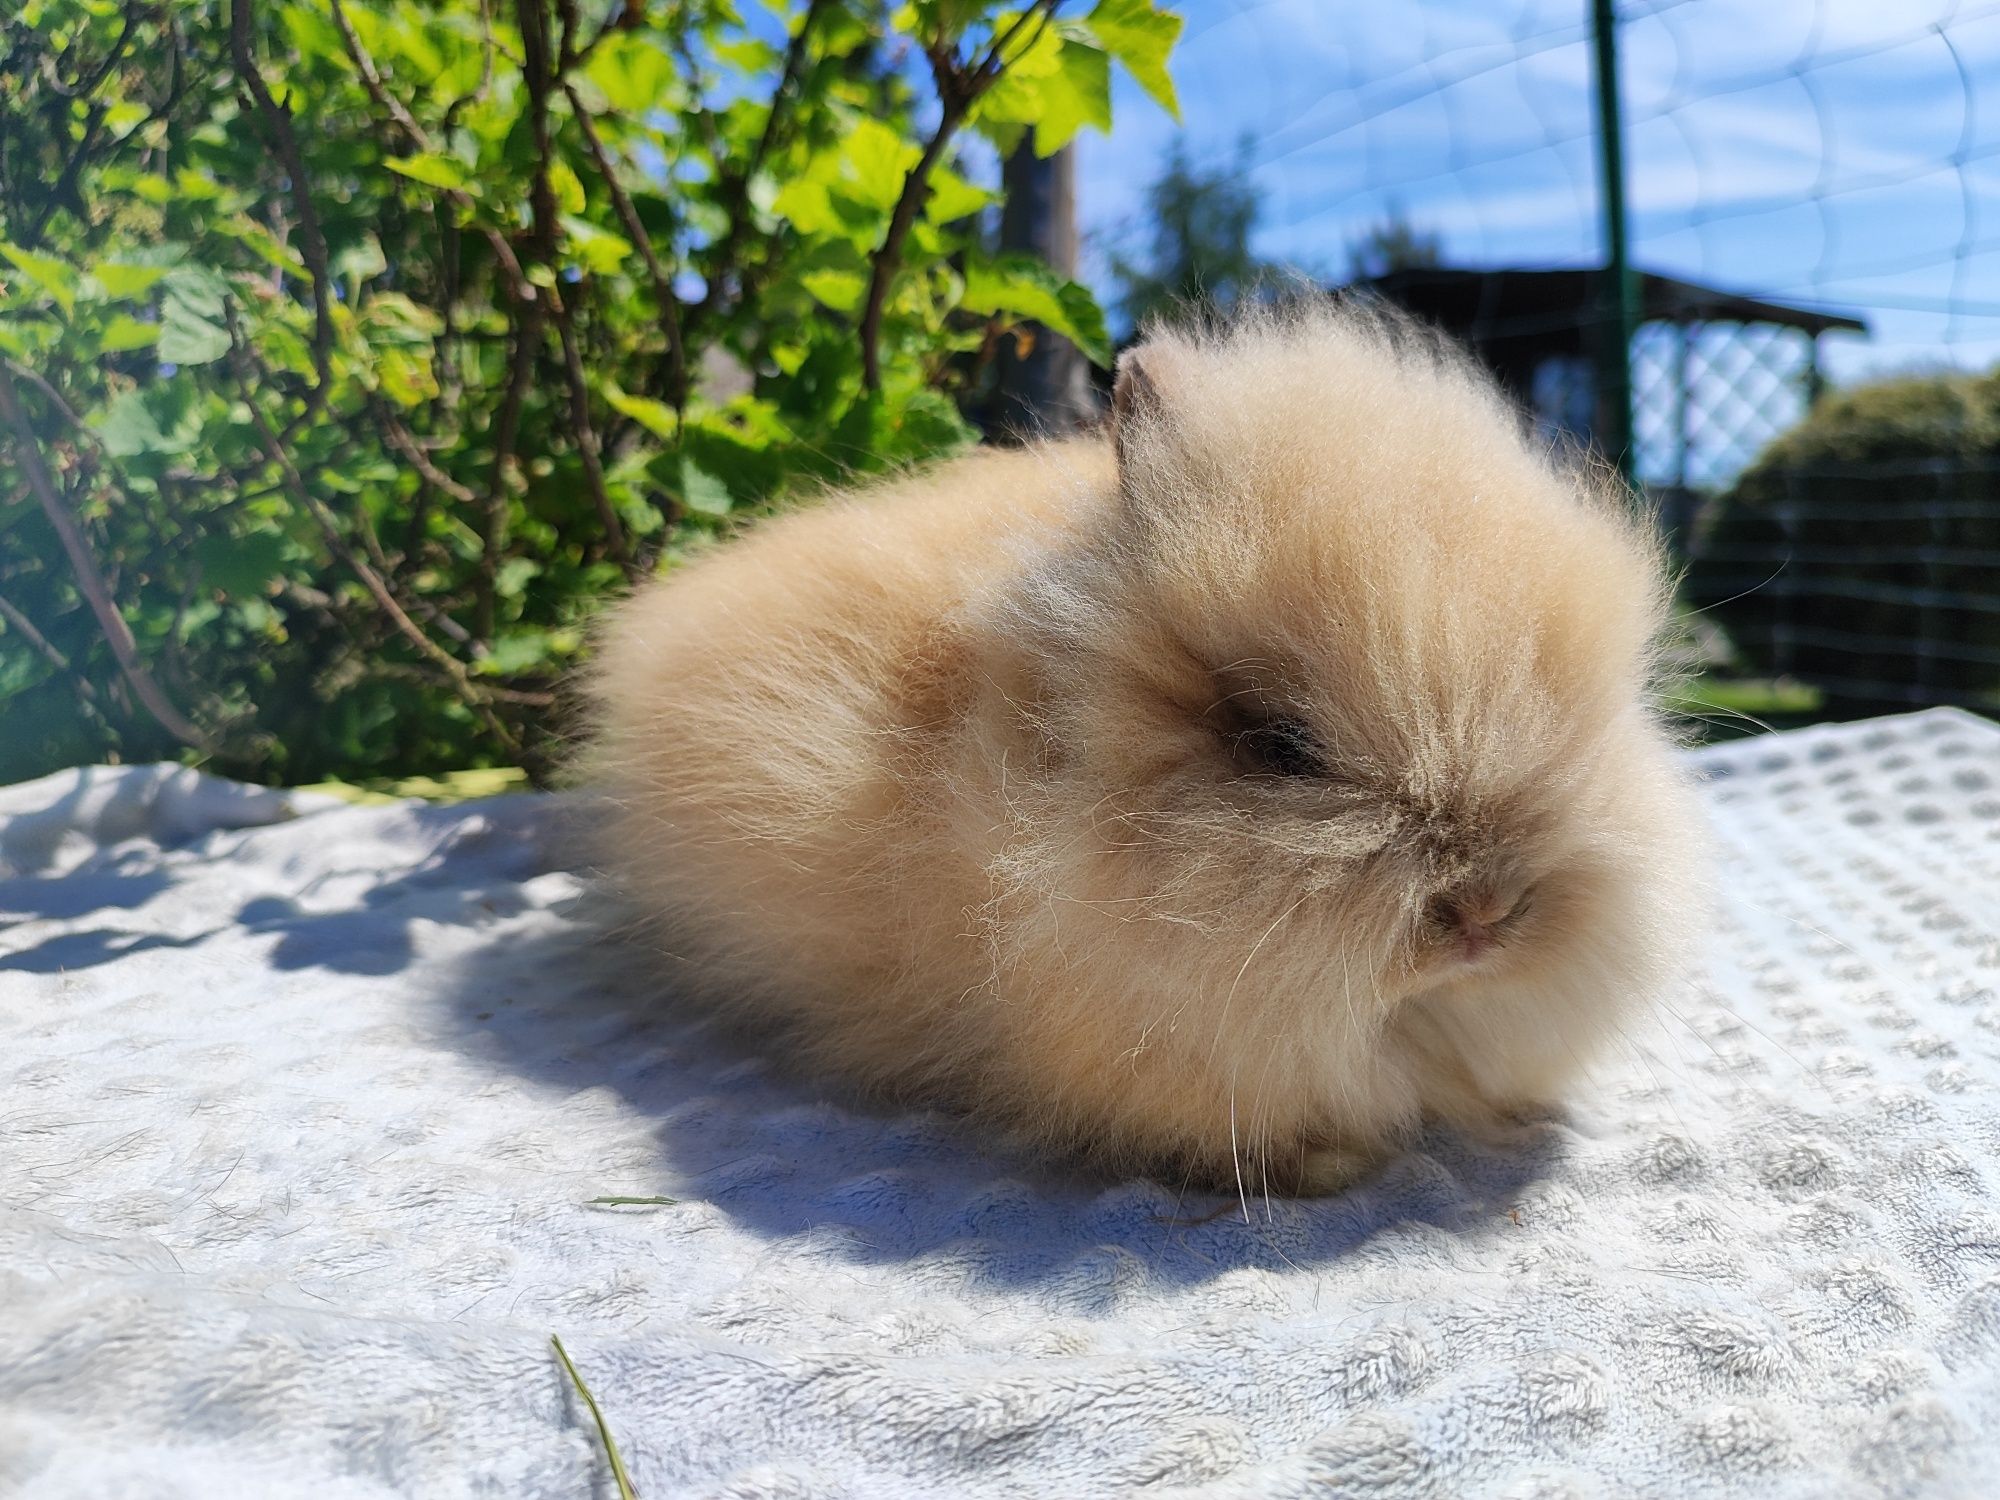 Karzełek teddy rasowy metryka legalna hodowla królik miniaturka